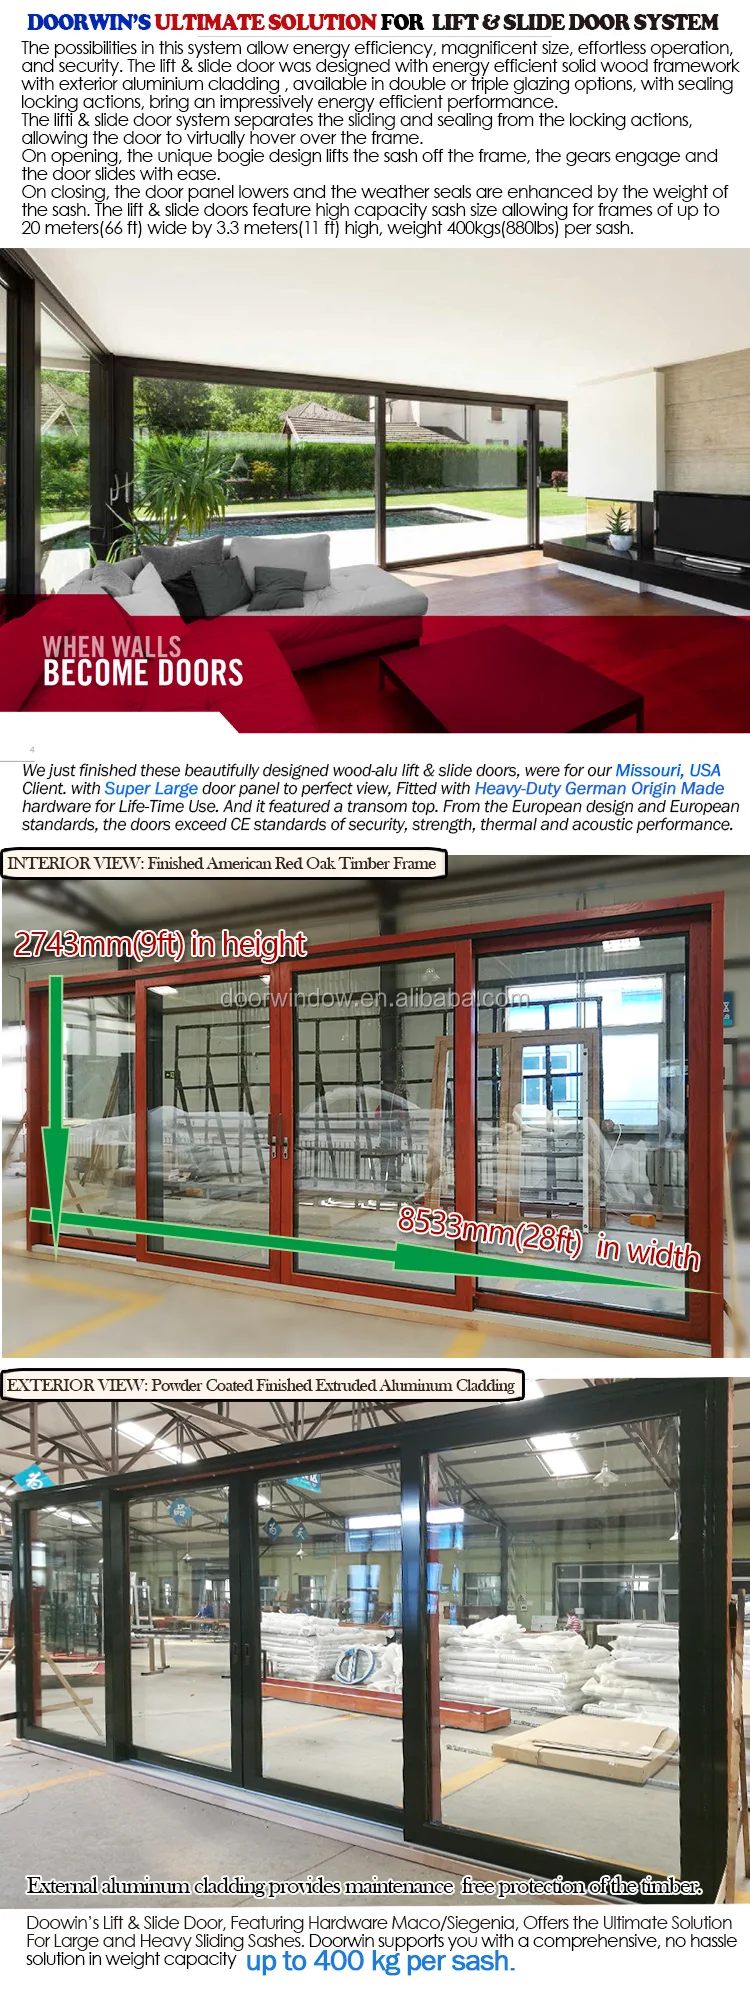 glass door double glazed sliding wrought iron design window film doors